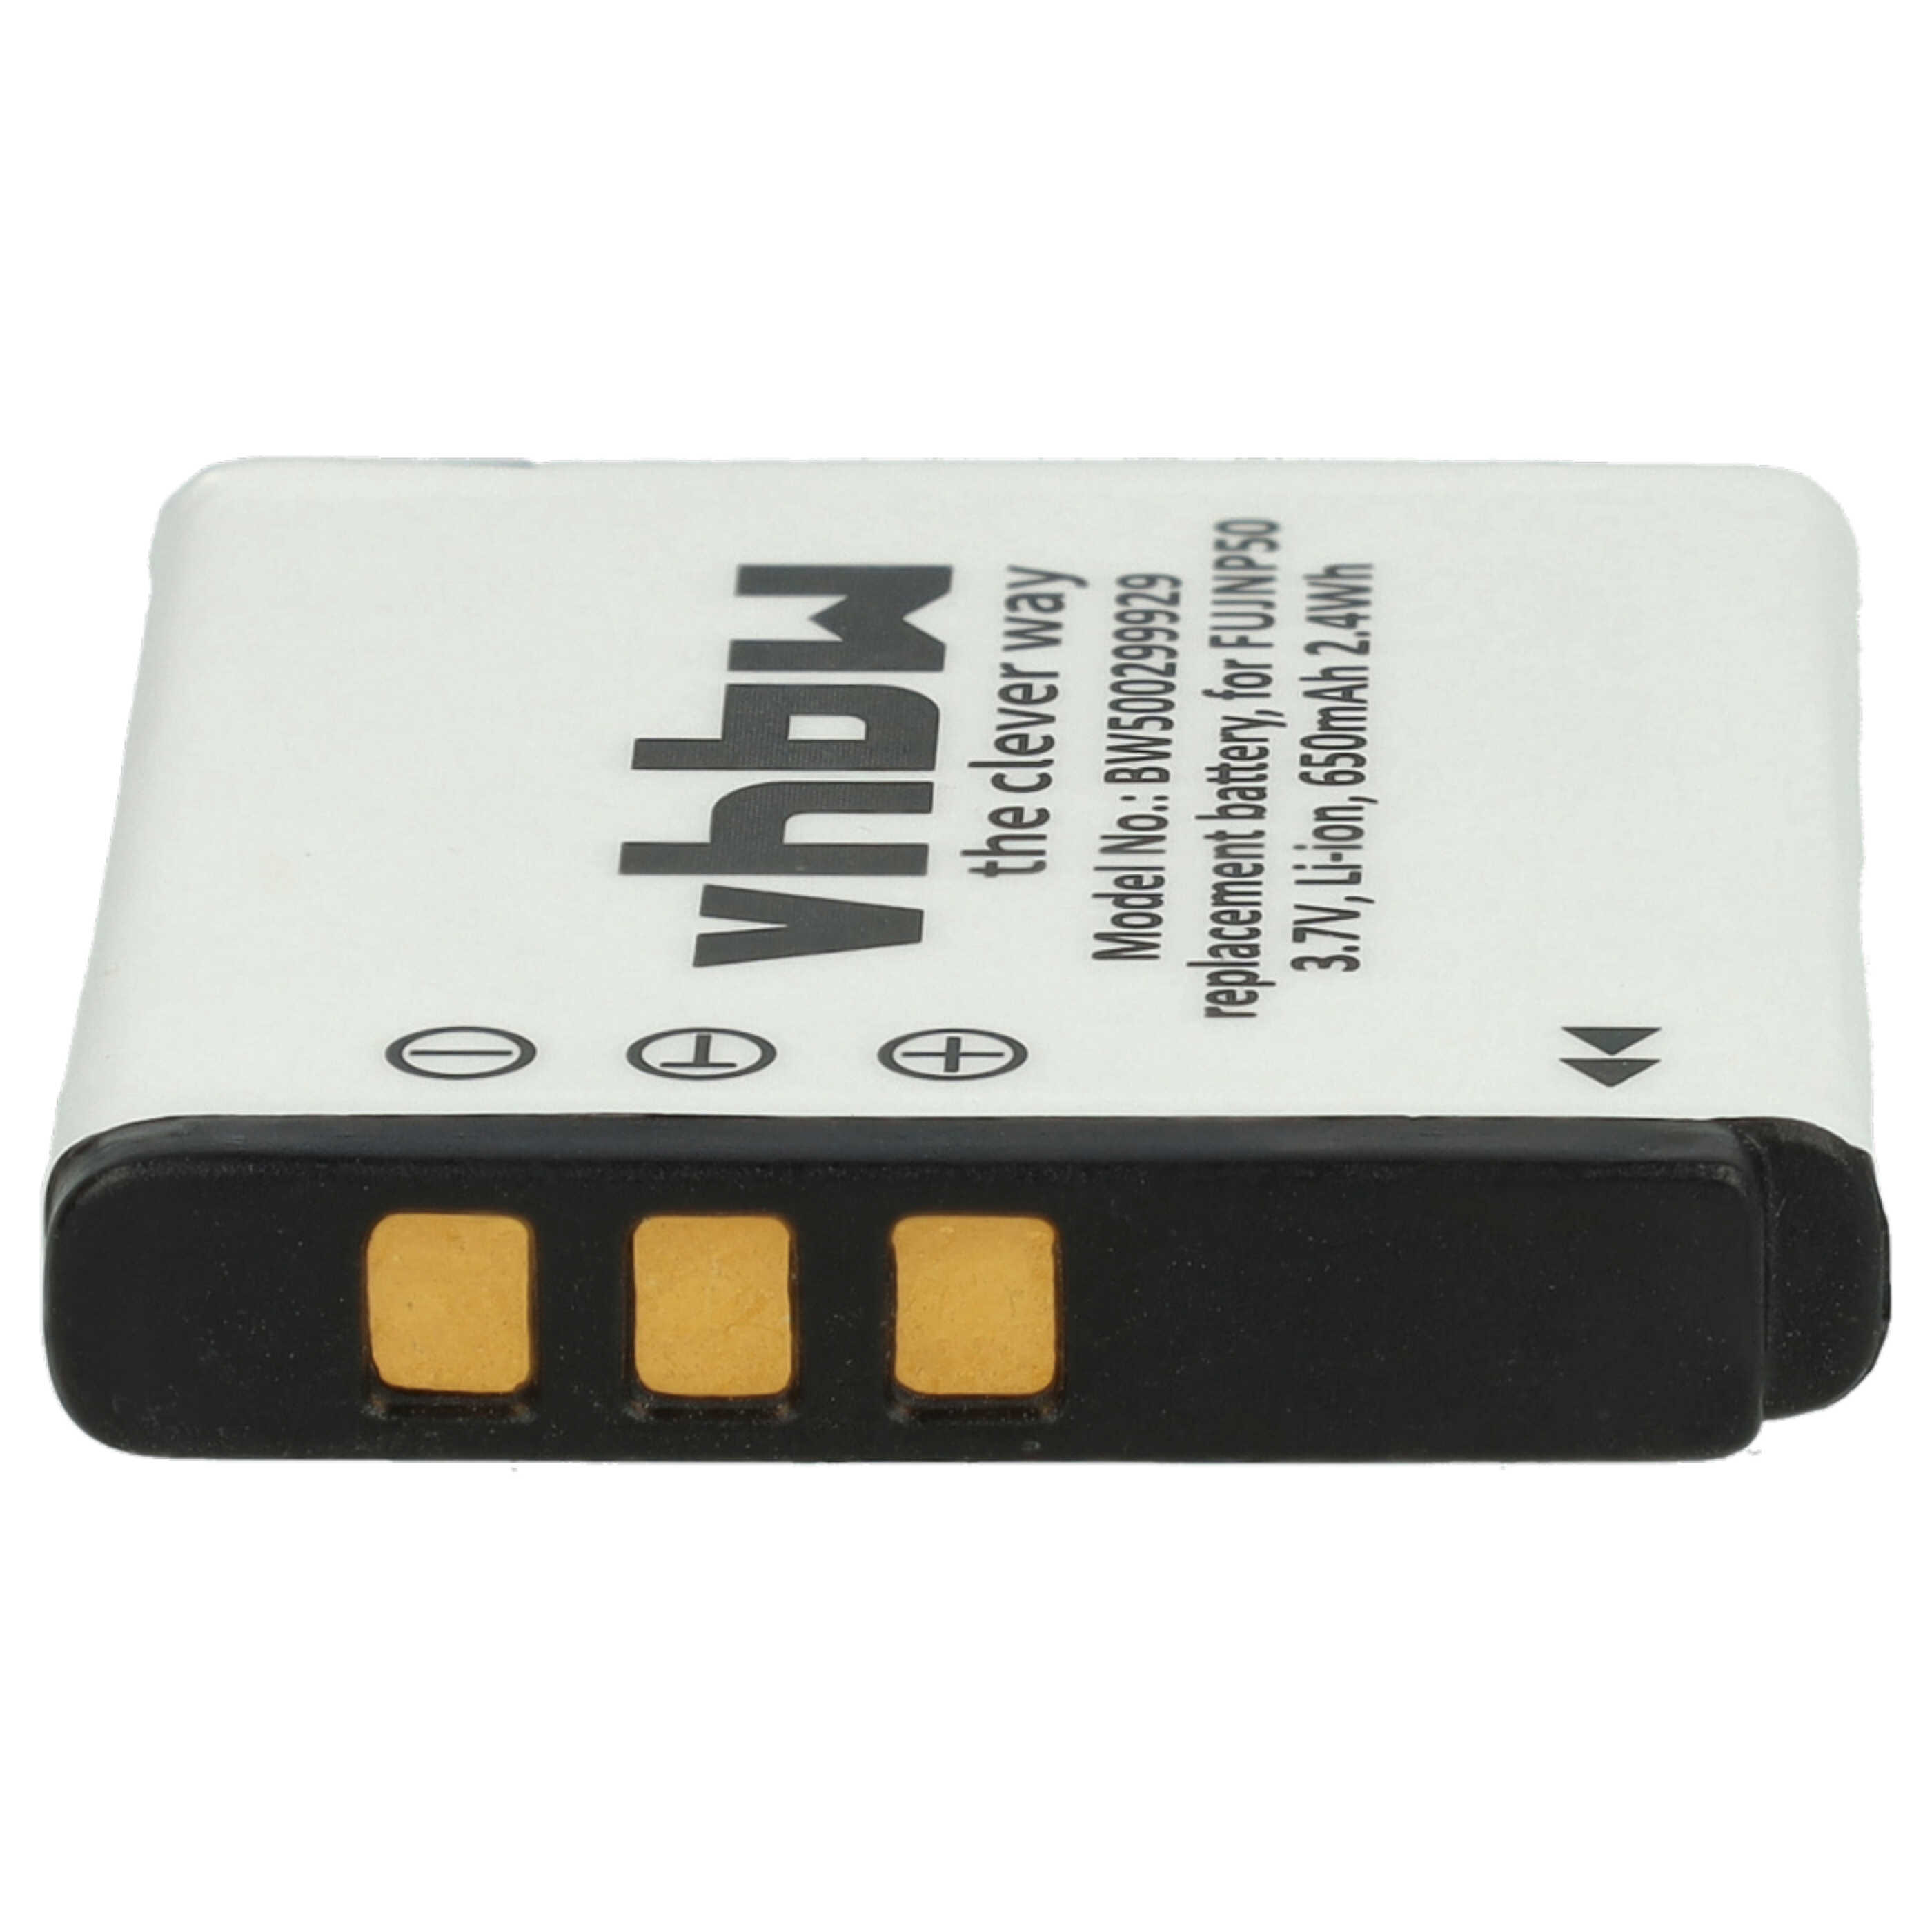 Batteries (3x pièces) remplace Pentax D-Li68, D-Li122 pour appareil photo - 650mAh 3,6V Li-ion